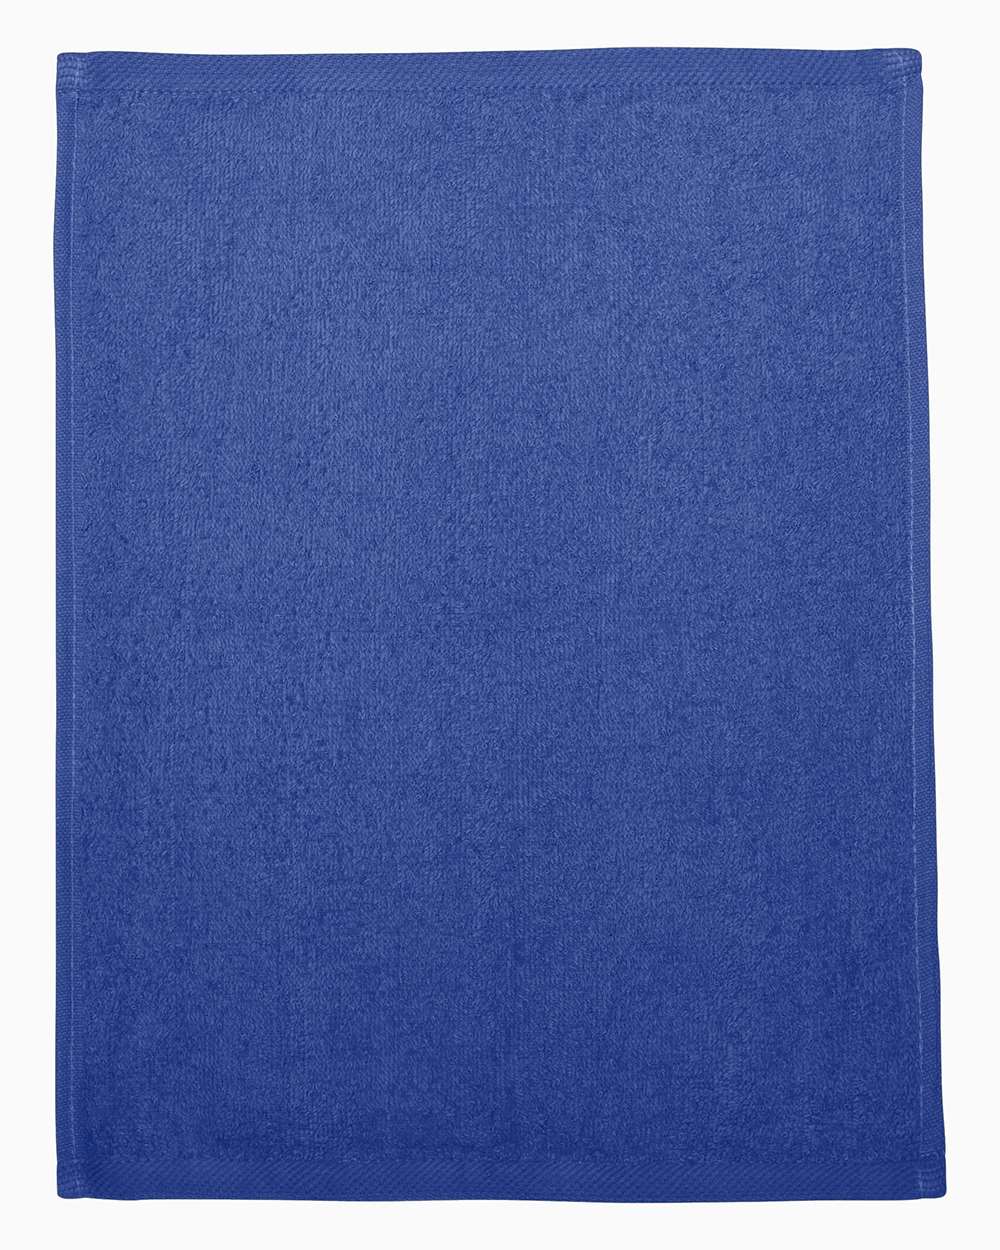 Q-Tees Hemmed Fingertip Towel T600 #color_Royal